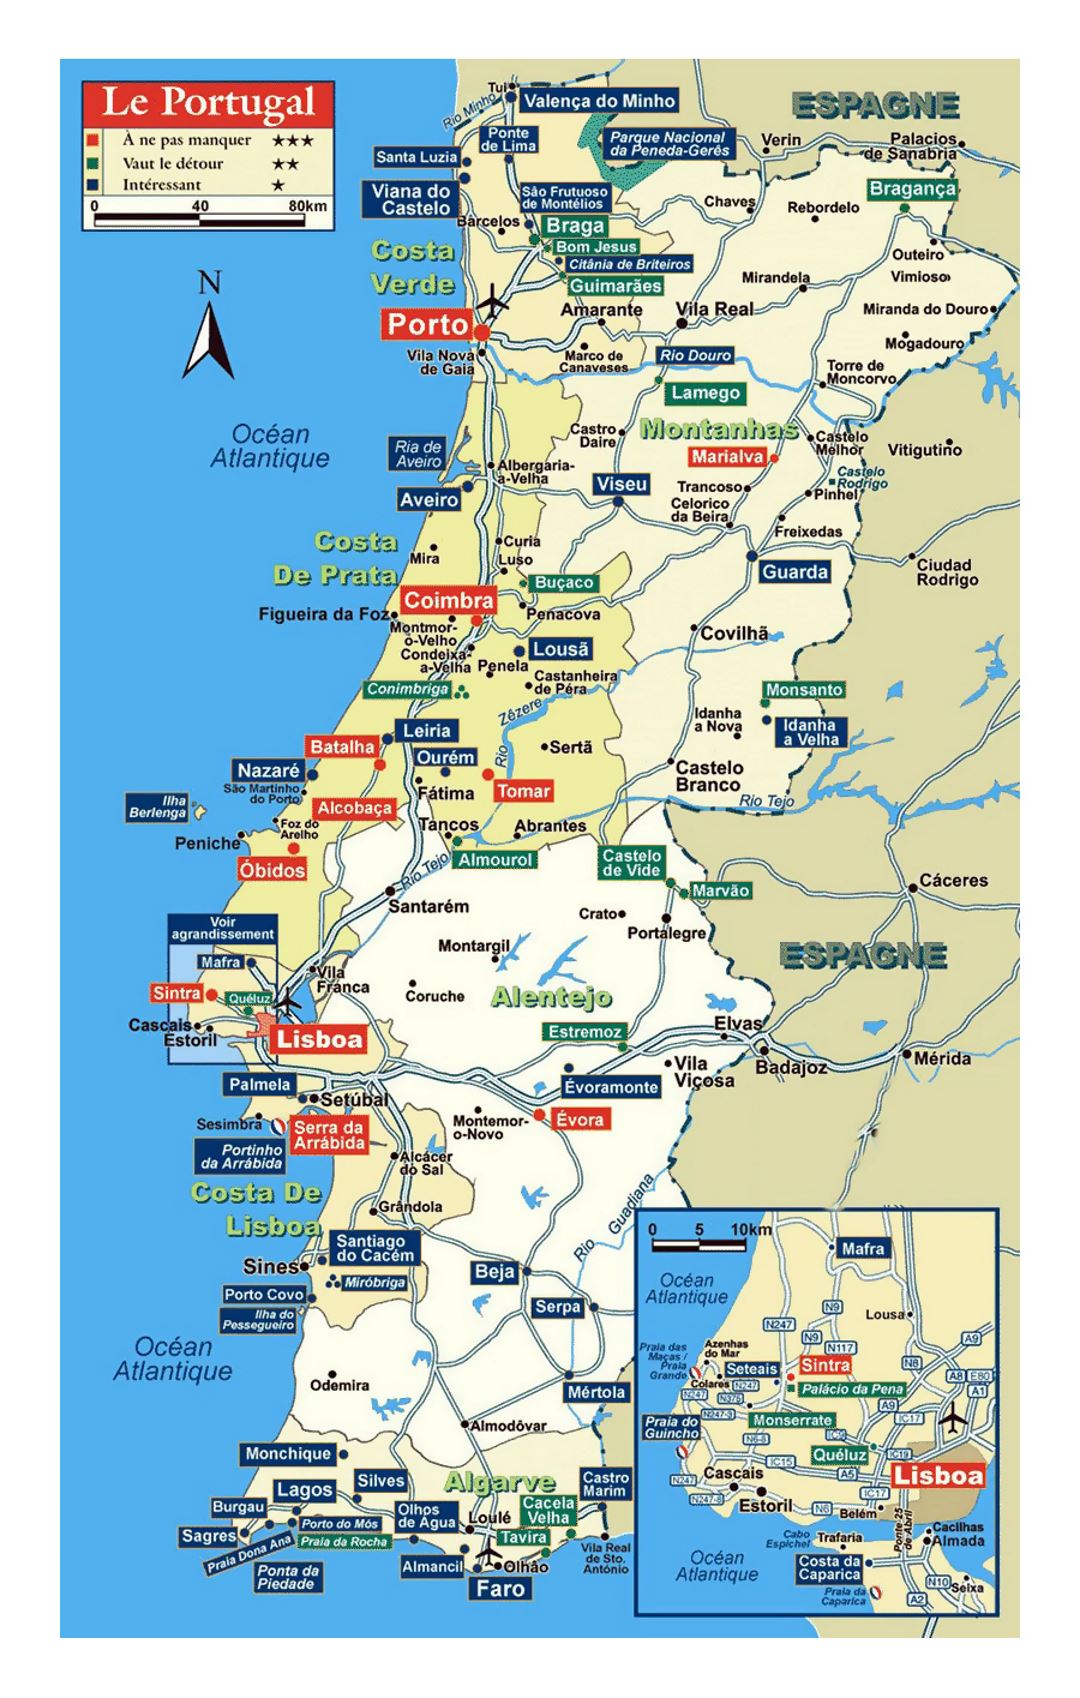 Detallado mapa de Portugal con carreteras y otras marcas